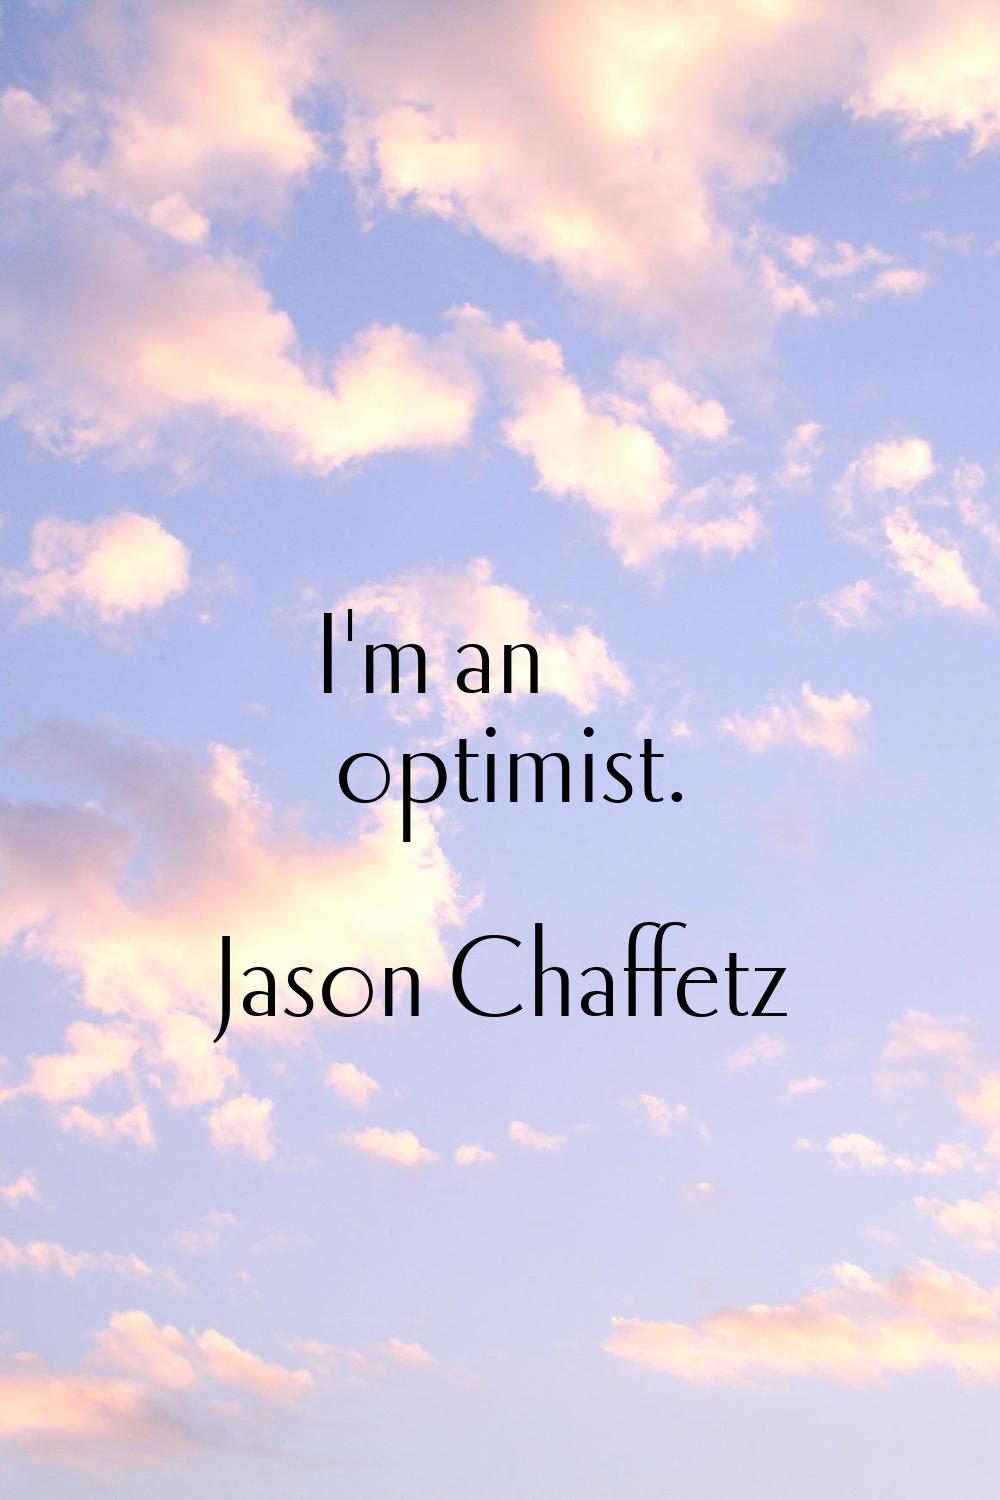 I'm an optimist.